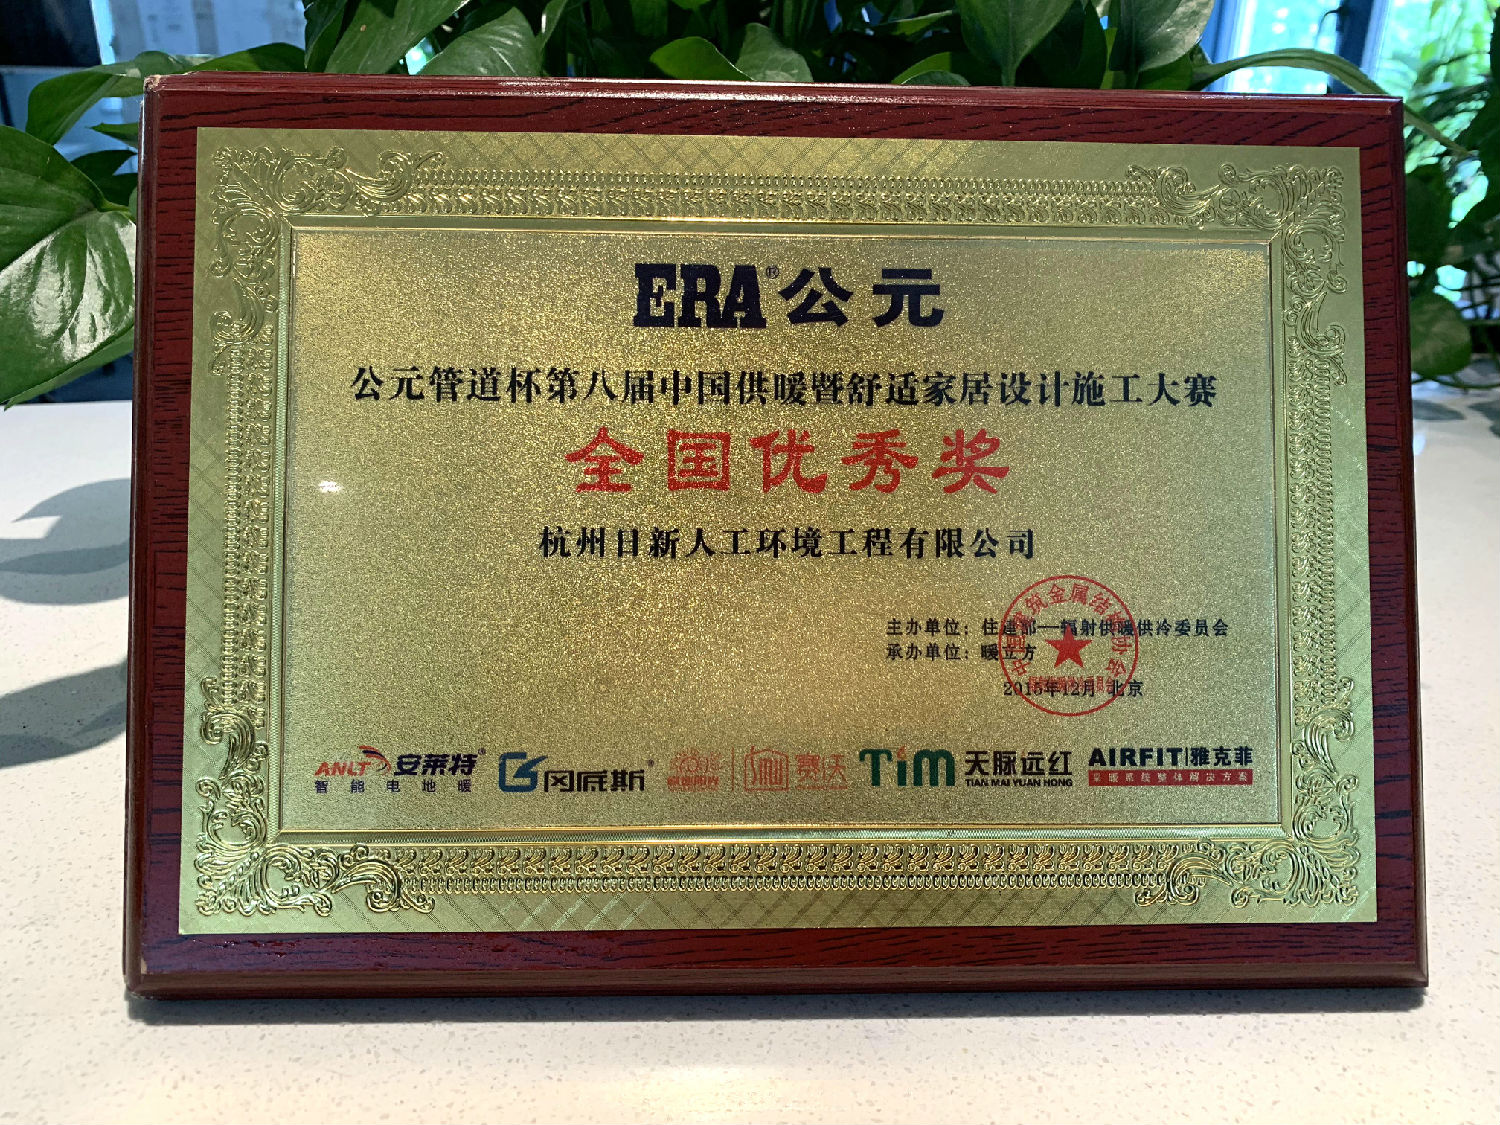 2015年日新环境在公元管道杯第八届中国供暖暨舒适家居设计施工大赛中荣获“全国优秀奖”